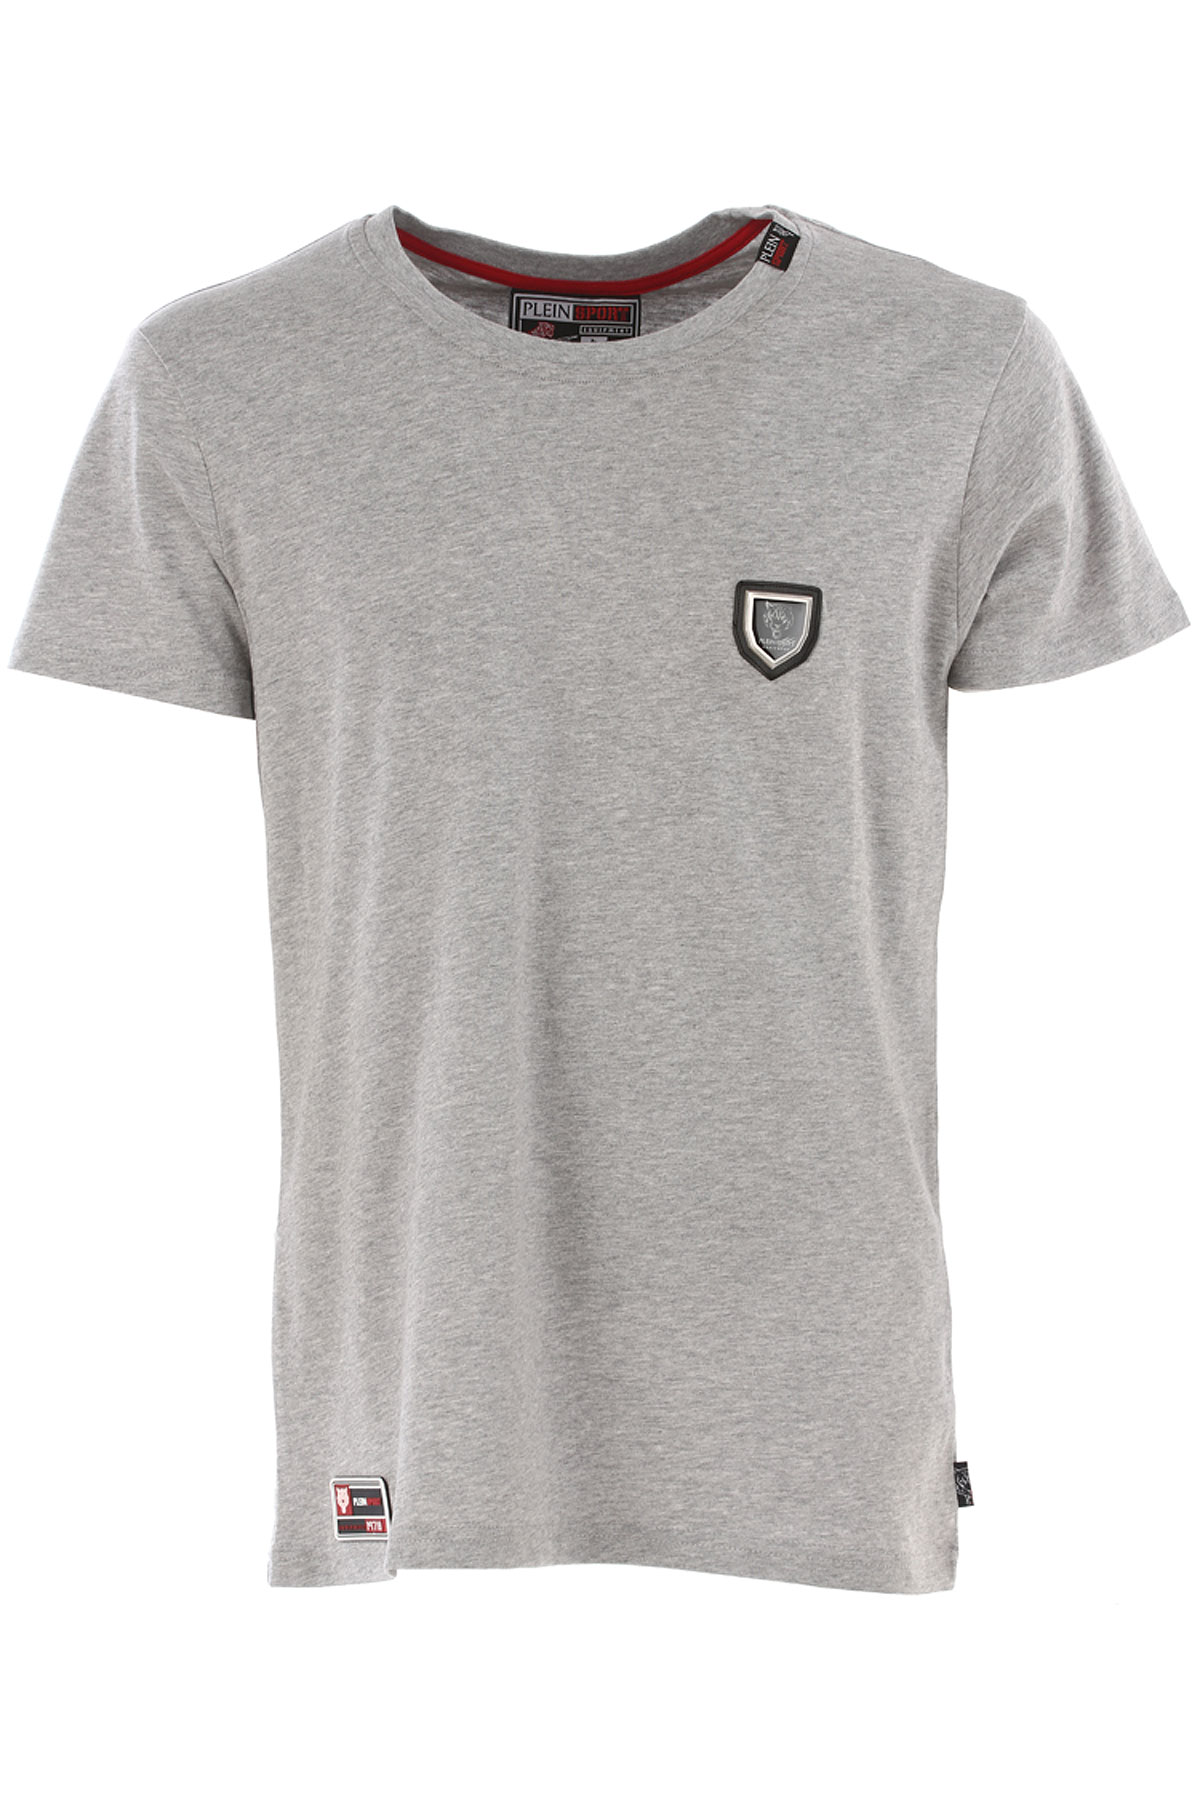 Philipp Plein T-shirt Homme , Gris, Coton, 2017, L S